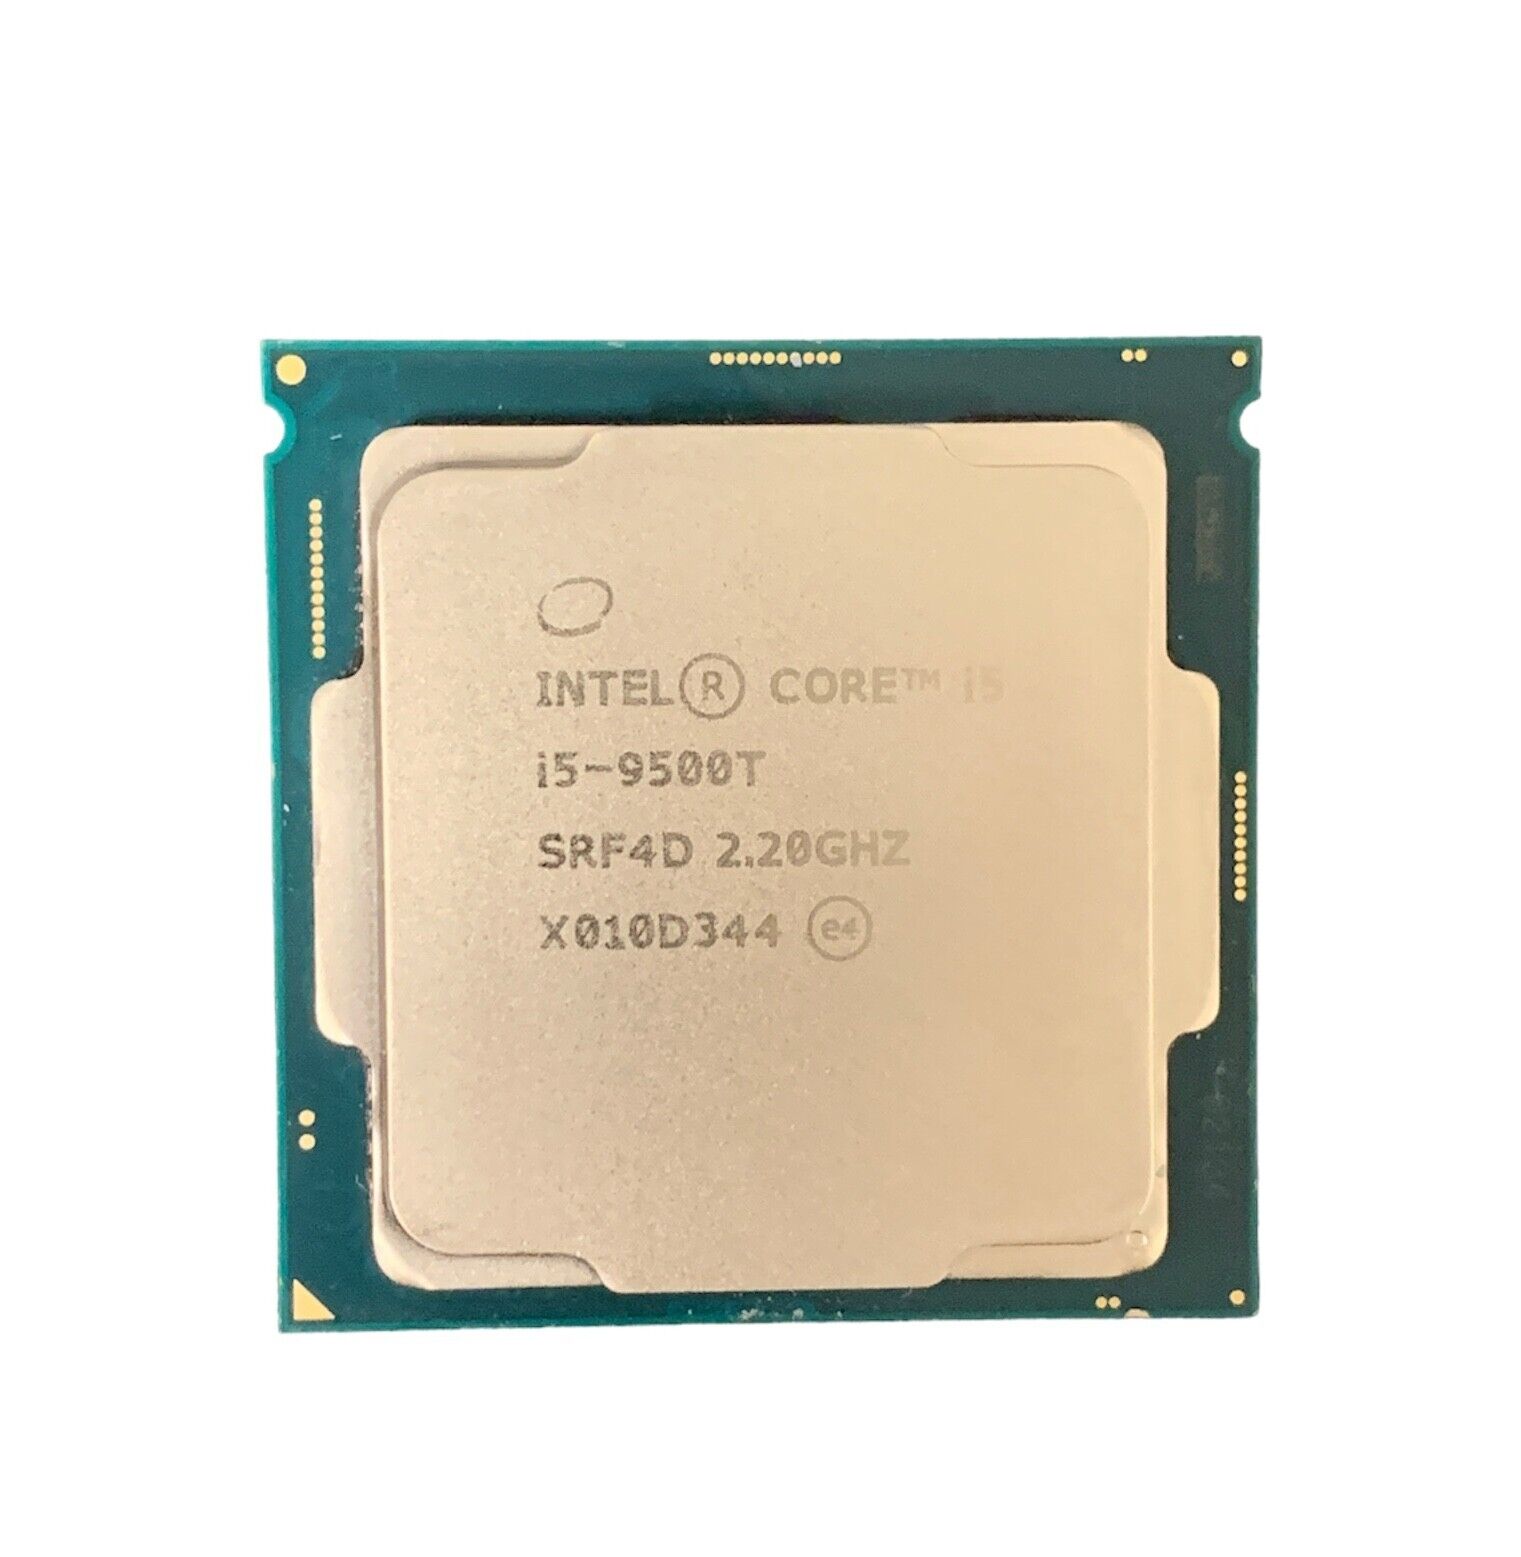 Lot of 2 Intel Core i5-9500T | 2.20 GHz | 9 MB | 8 GT/s | SRF4D | CPU Processors